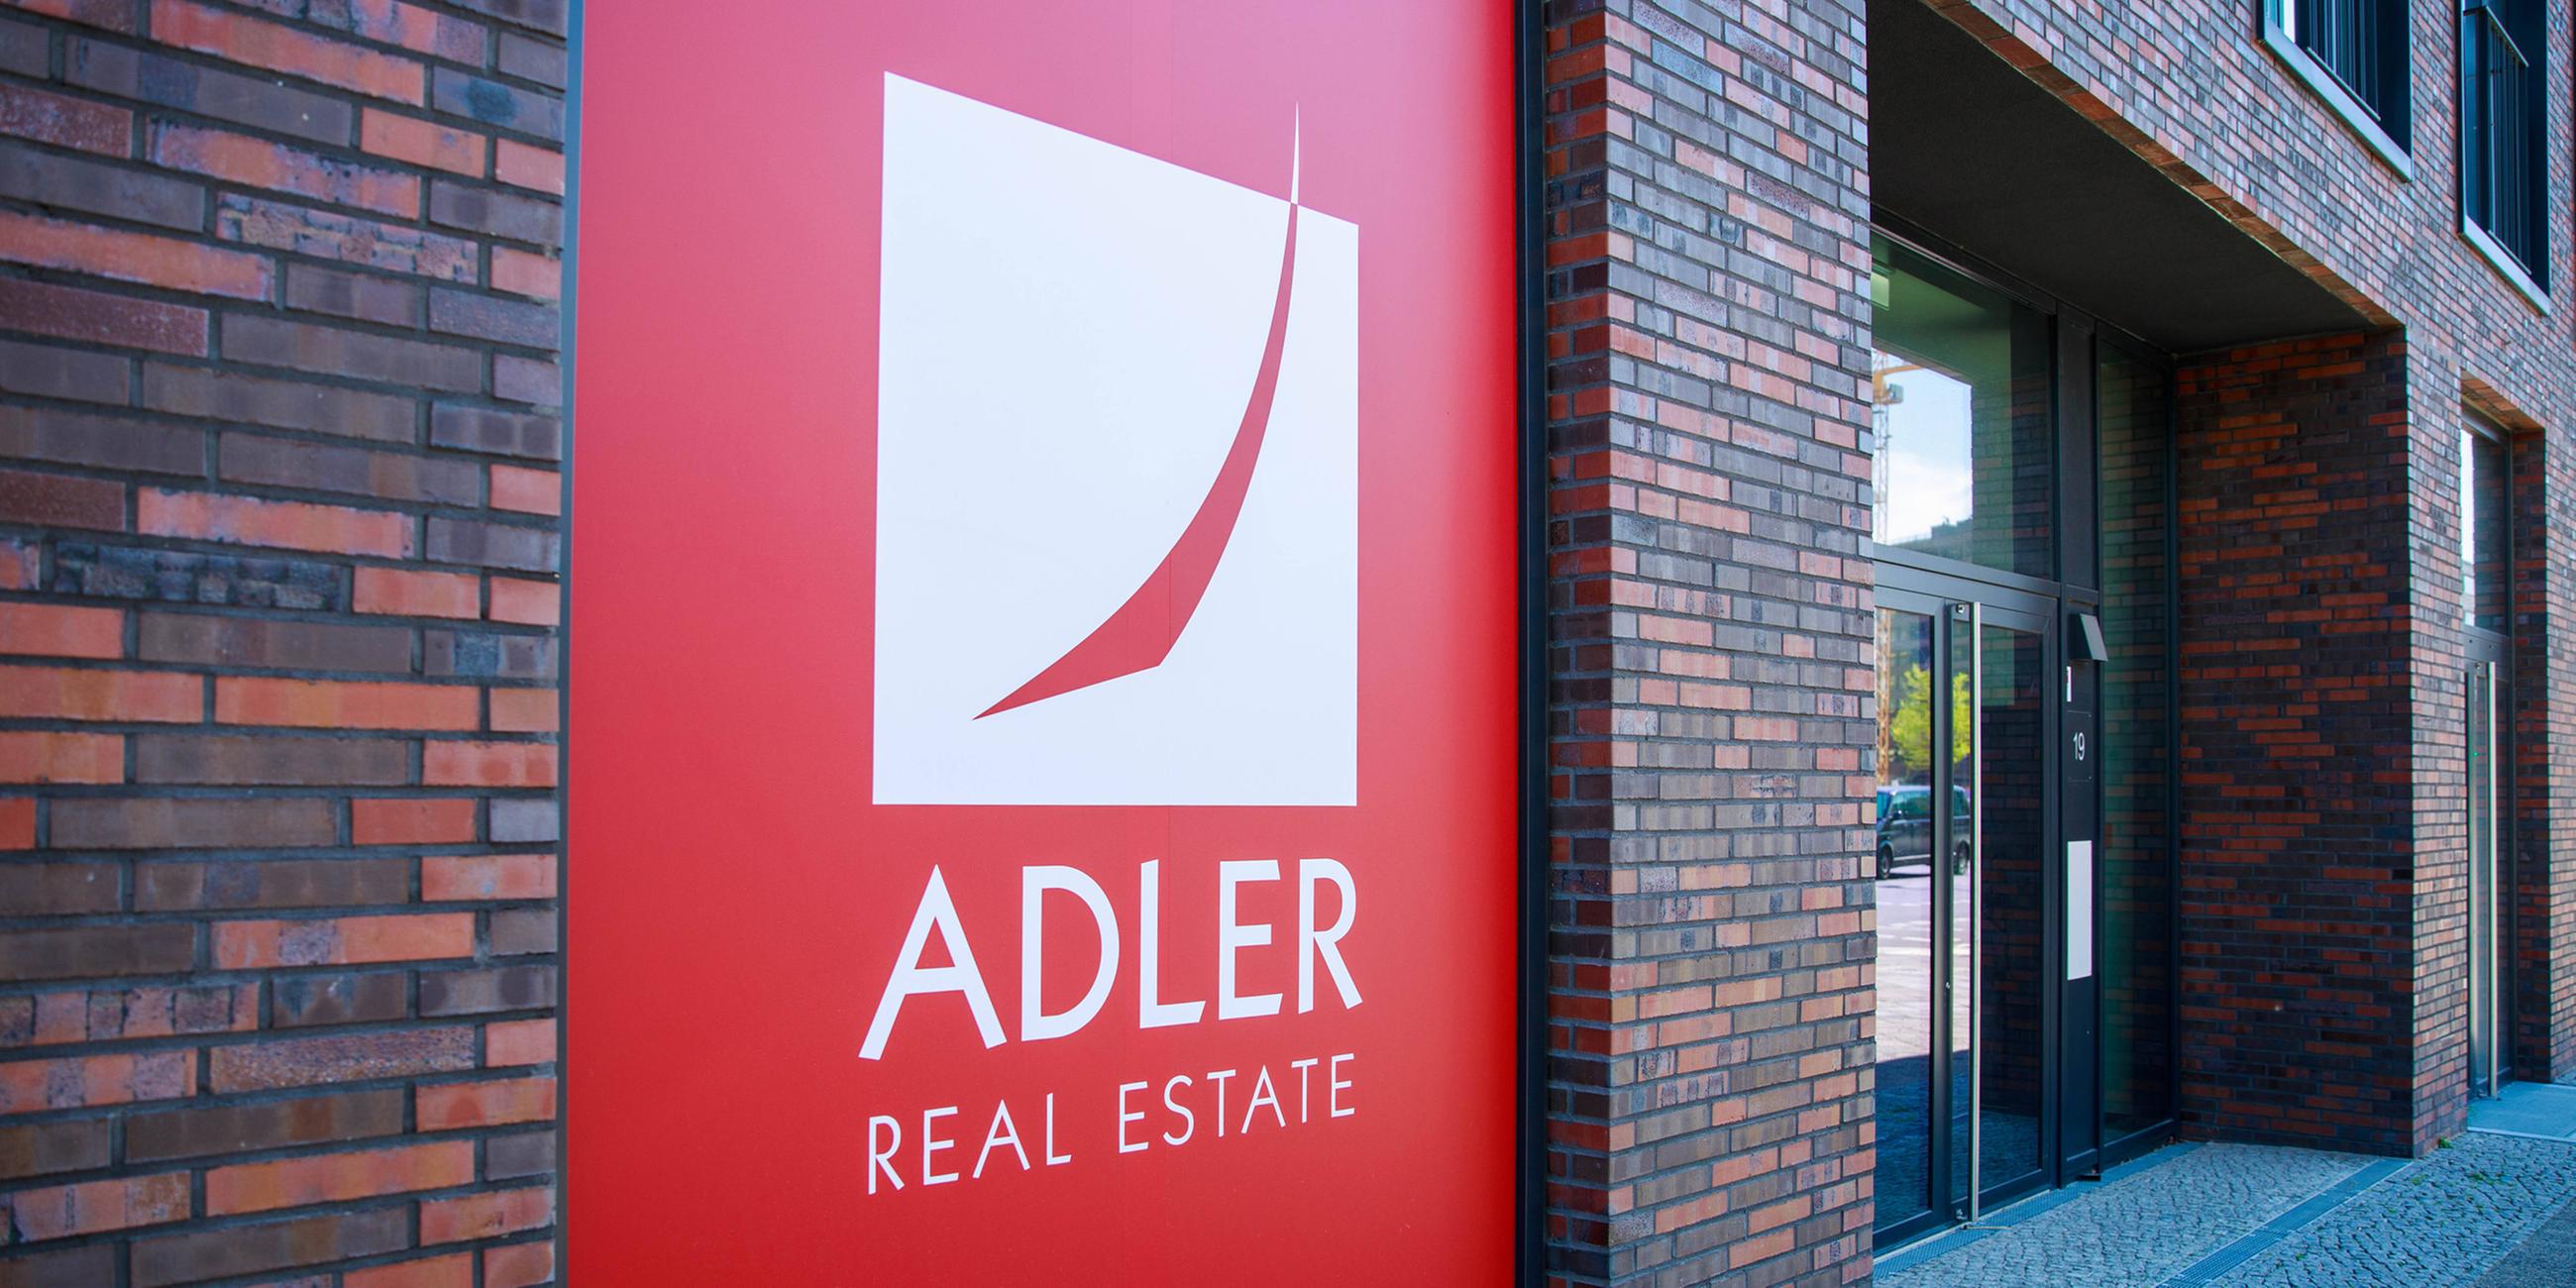 "Adler Real Estate"-Logo als Aukleber an das Front eines Neubaus.